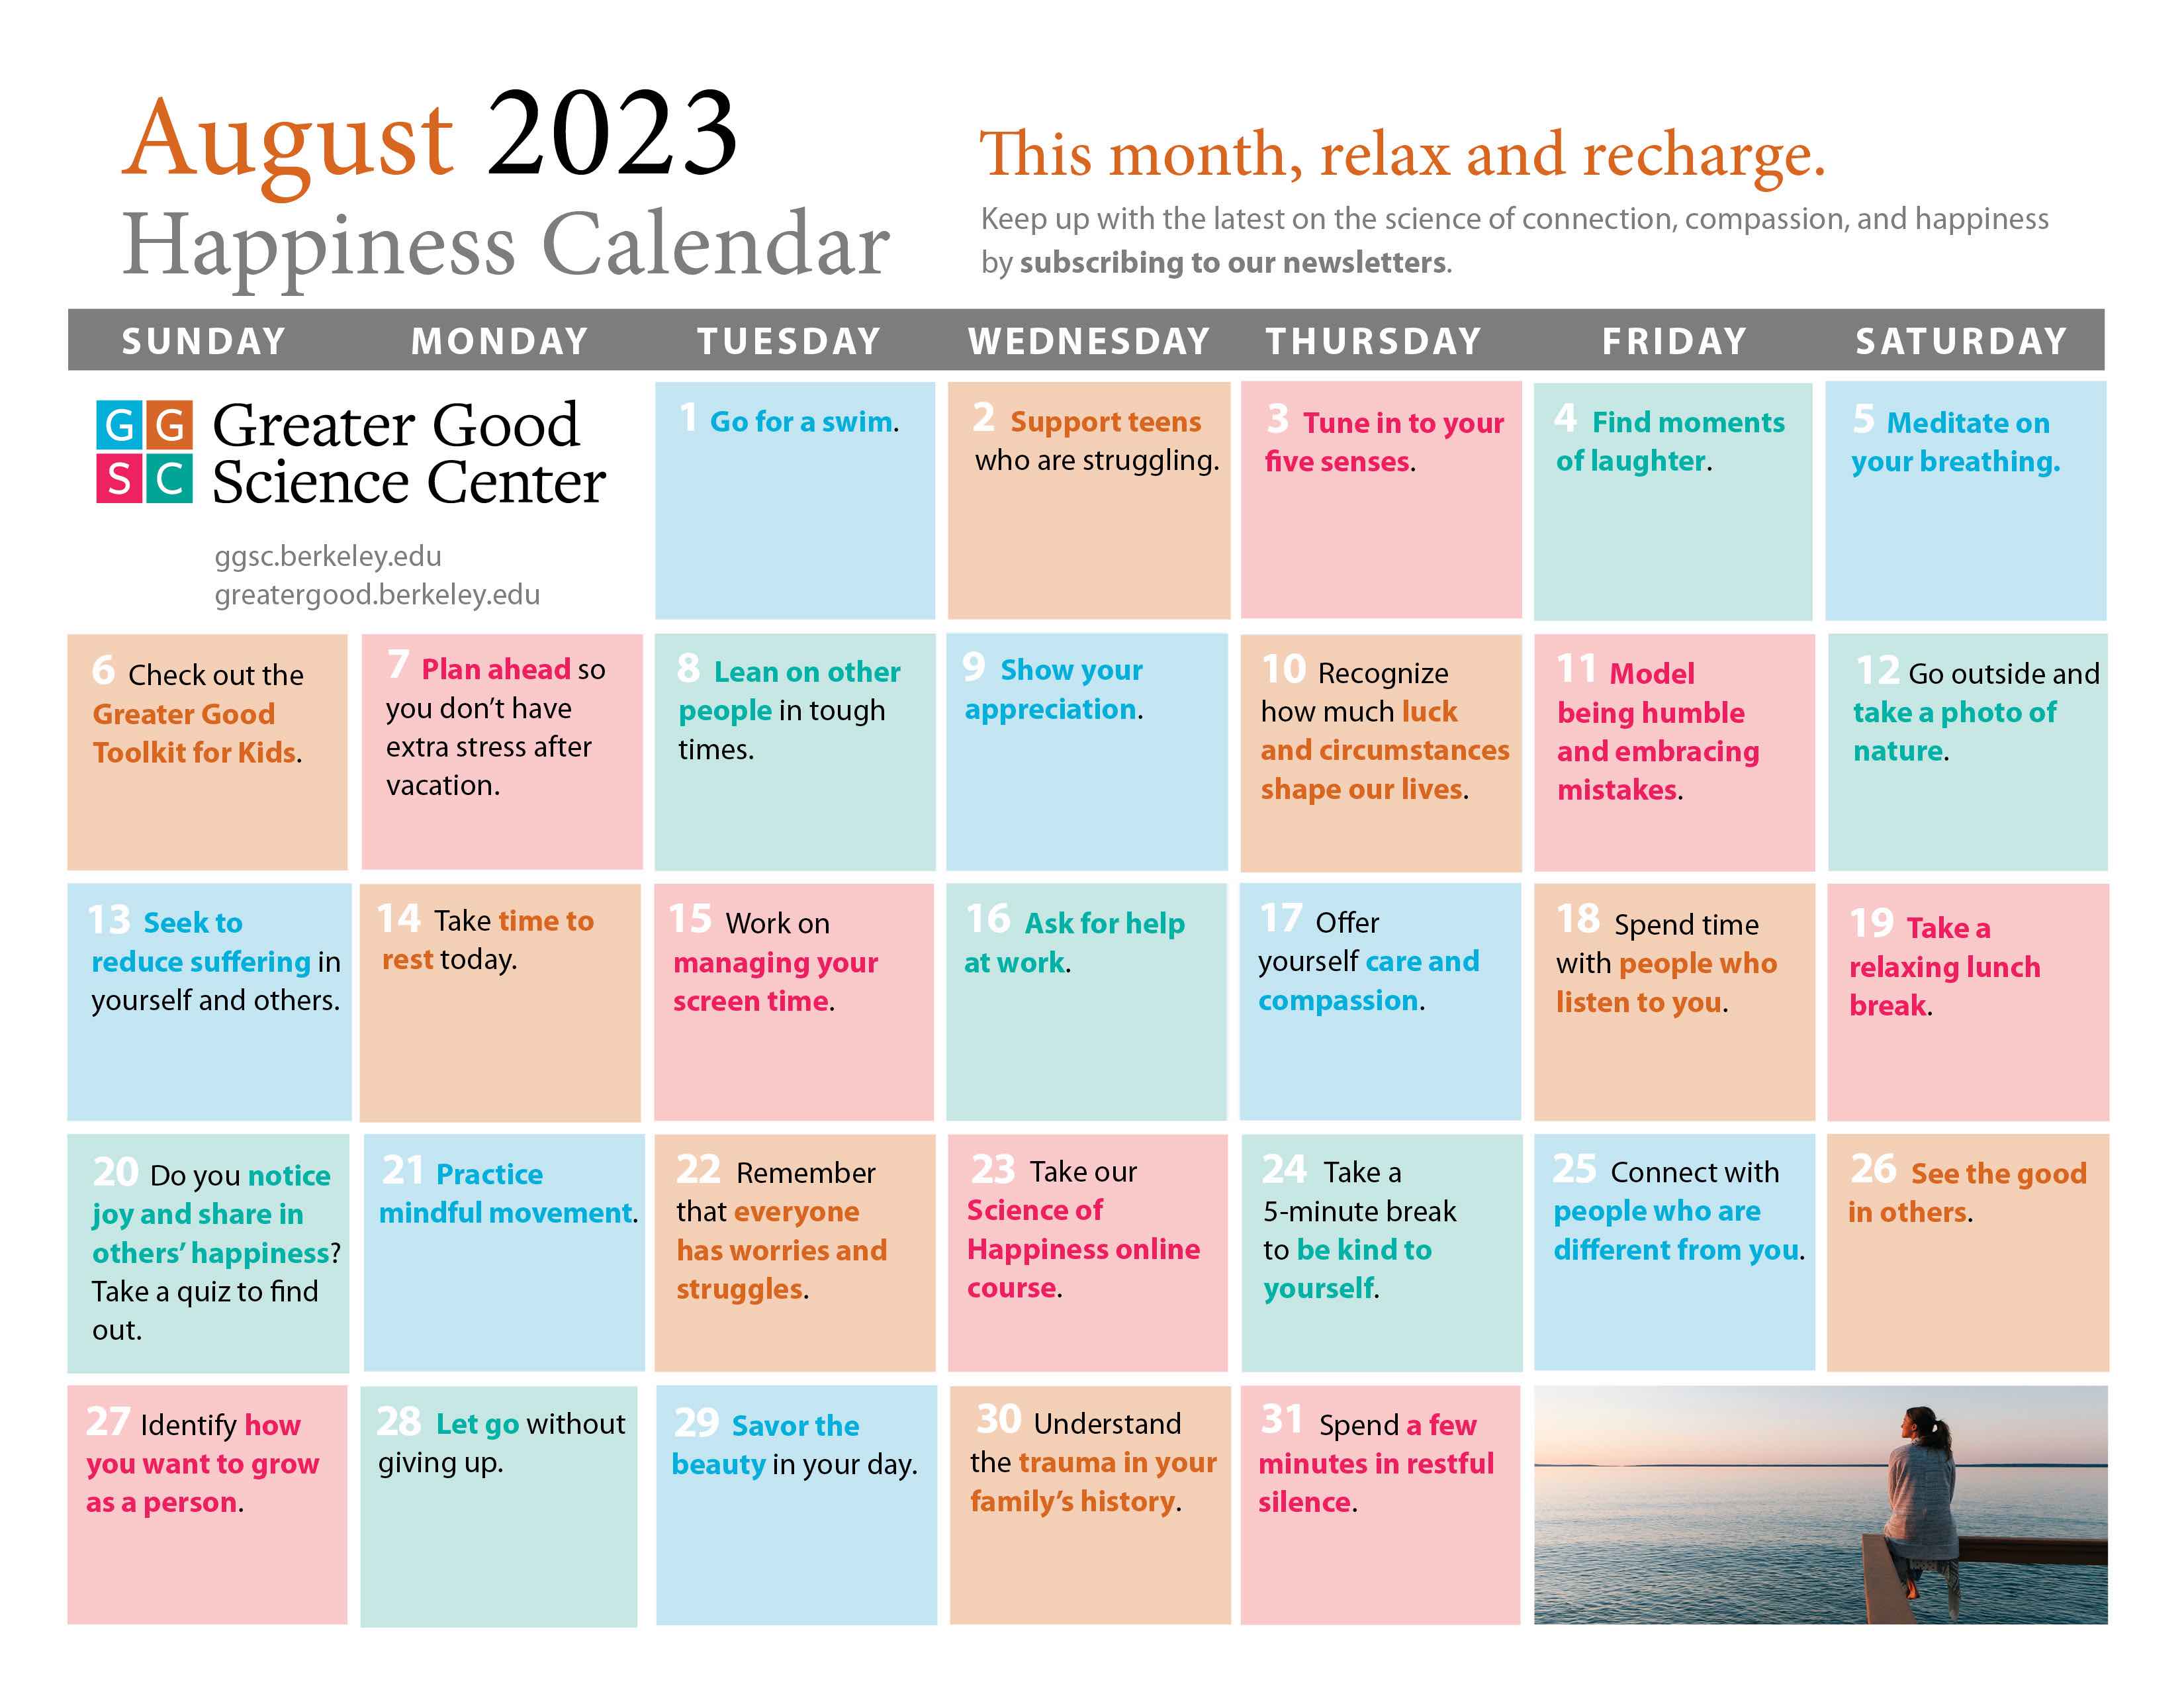 August 2023 happiness calendar